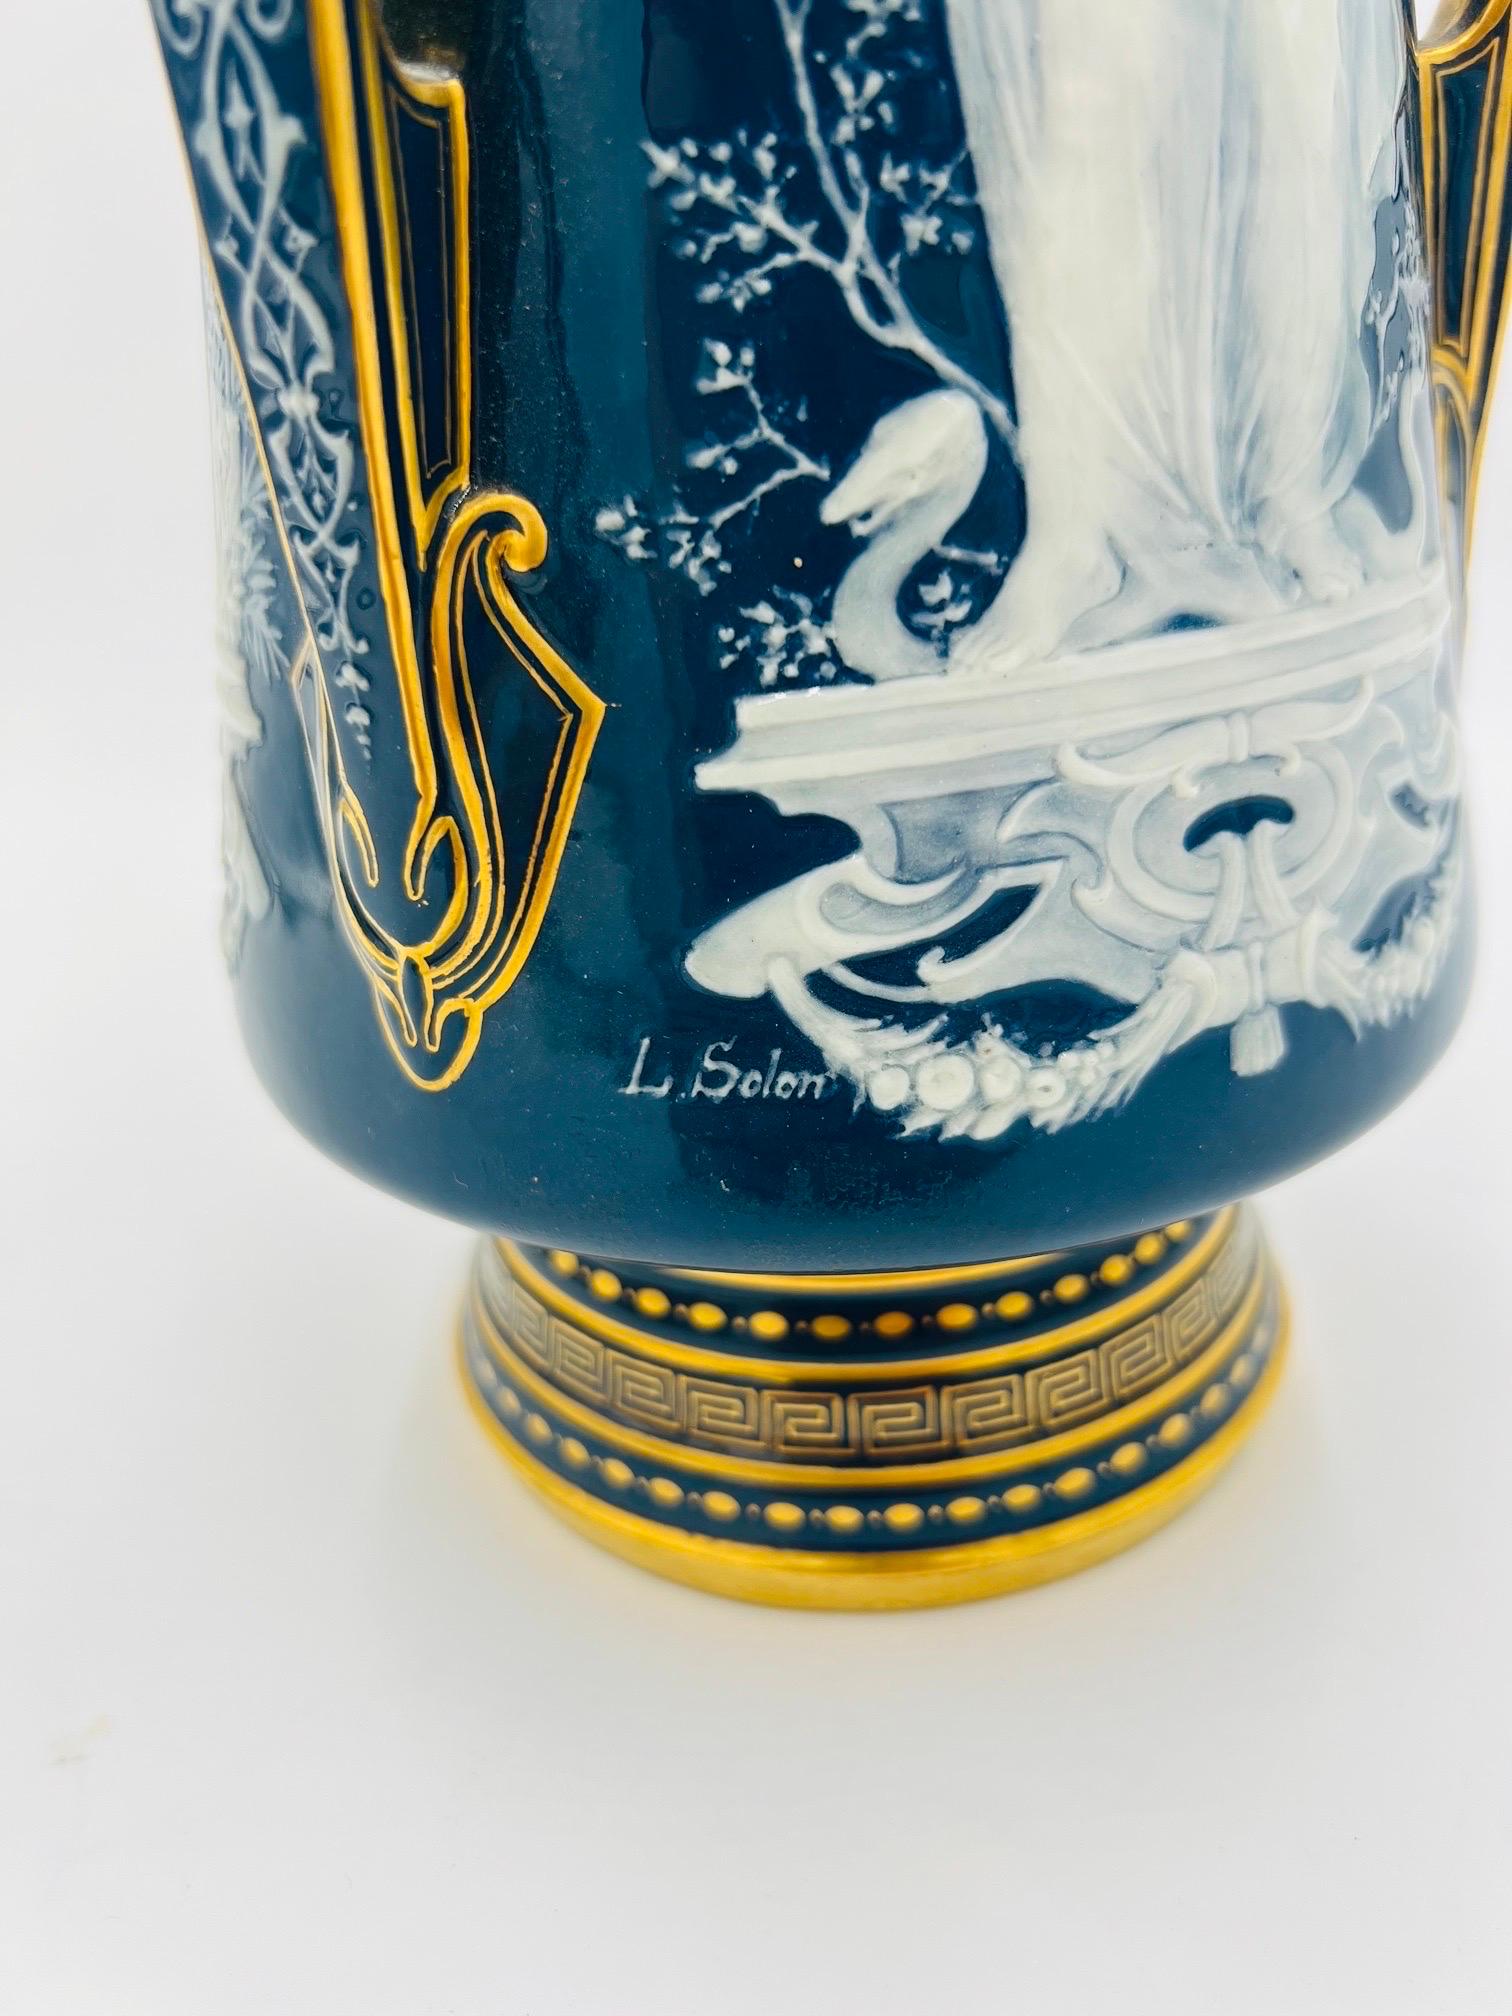 Important Louis Solon Mintons Pate-Sur-Pate “Cardinal Virtues” Porcelain Vase 7